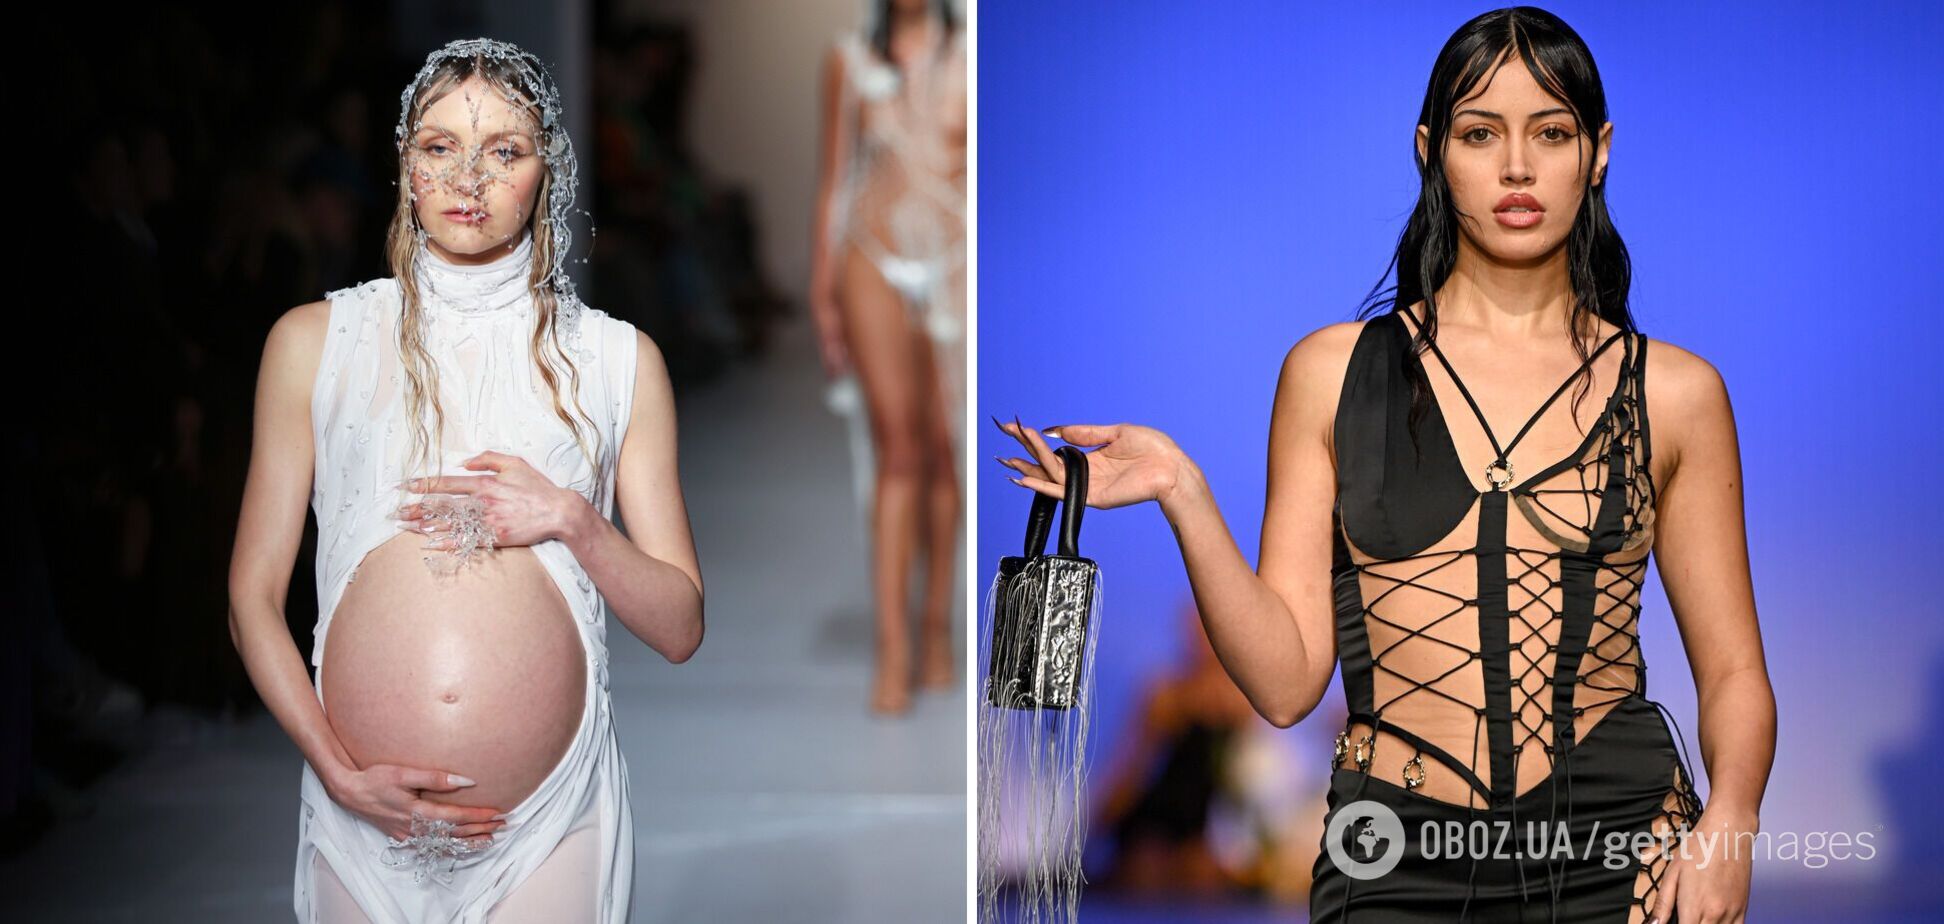 Беременные модели, прозрачные платья на двоих и поцелуи: на Неделе моды в Лондоне устроили причудливое шоу с необычными нарядами